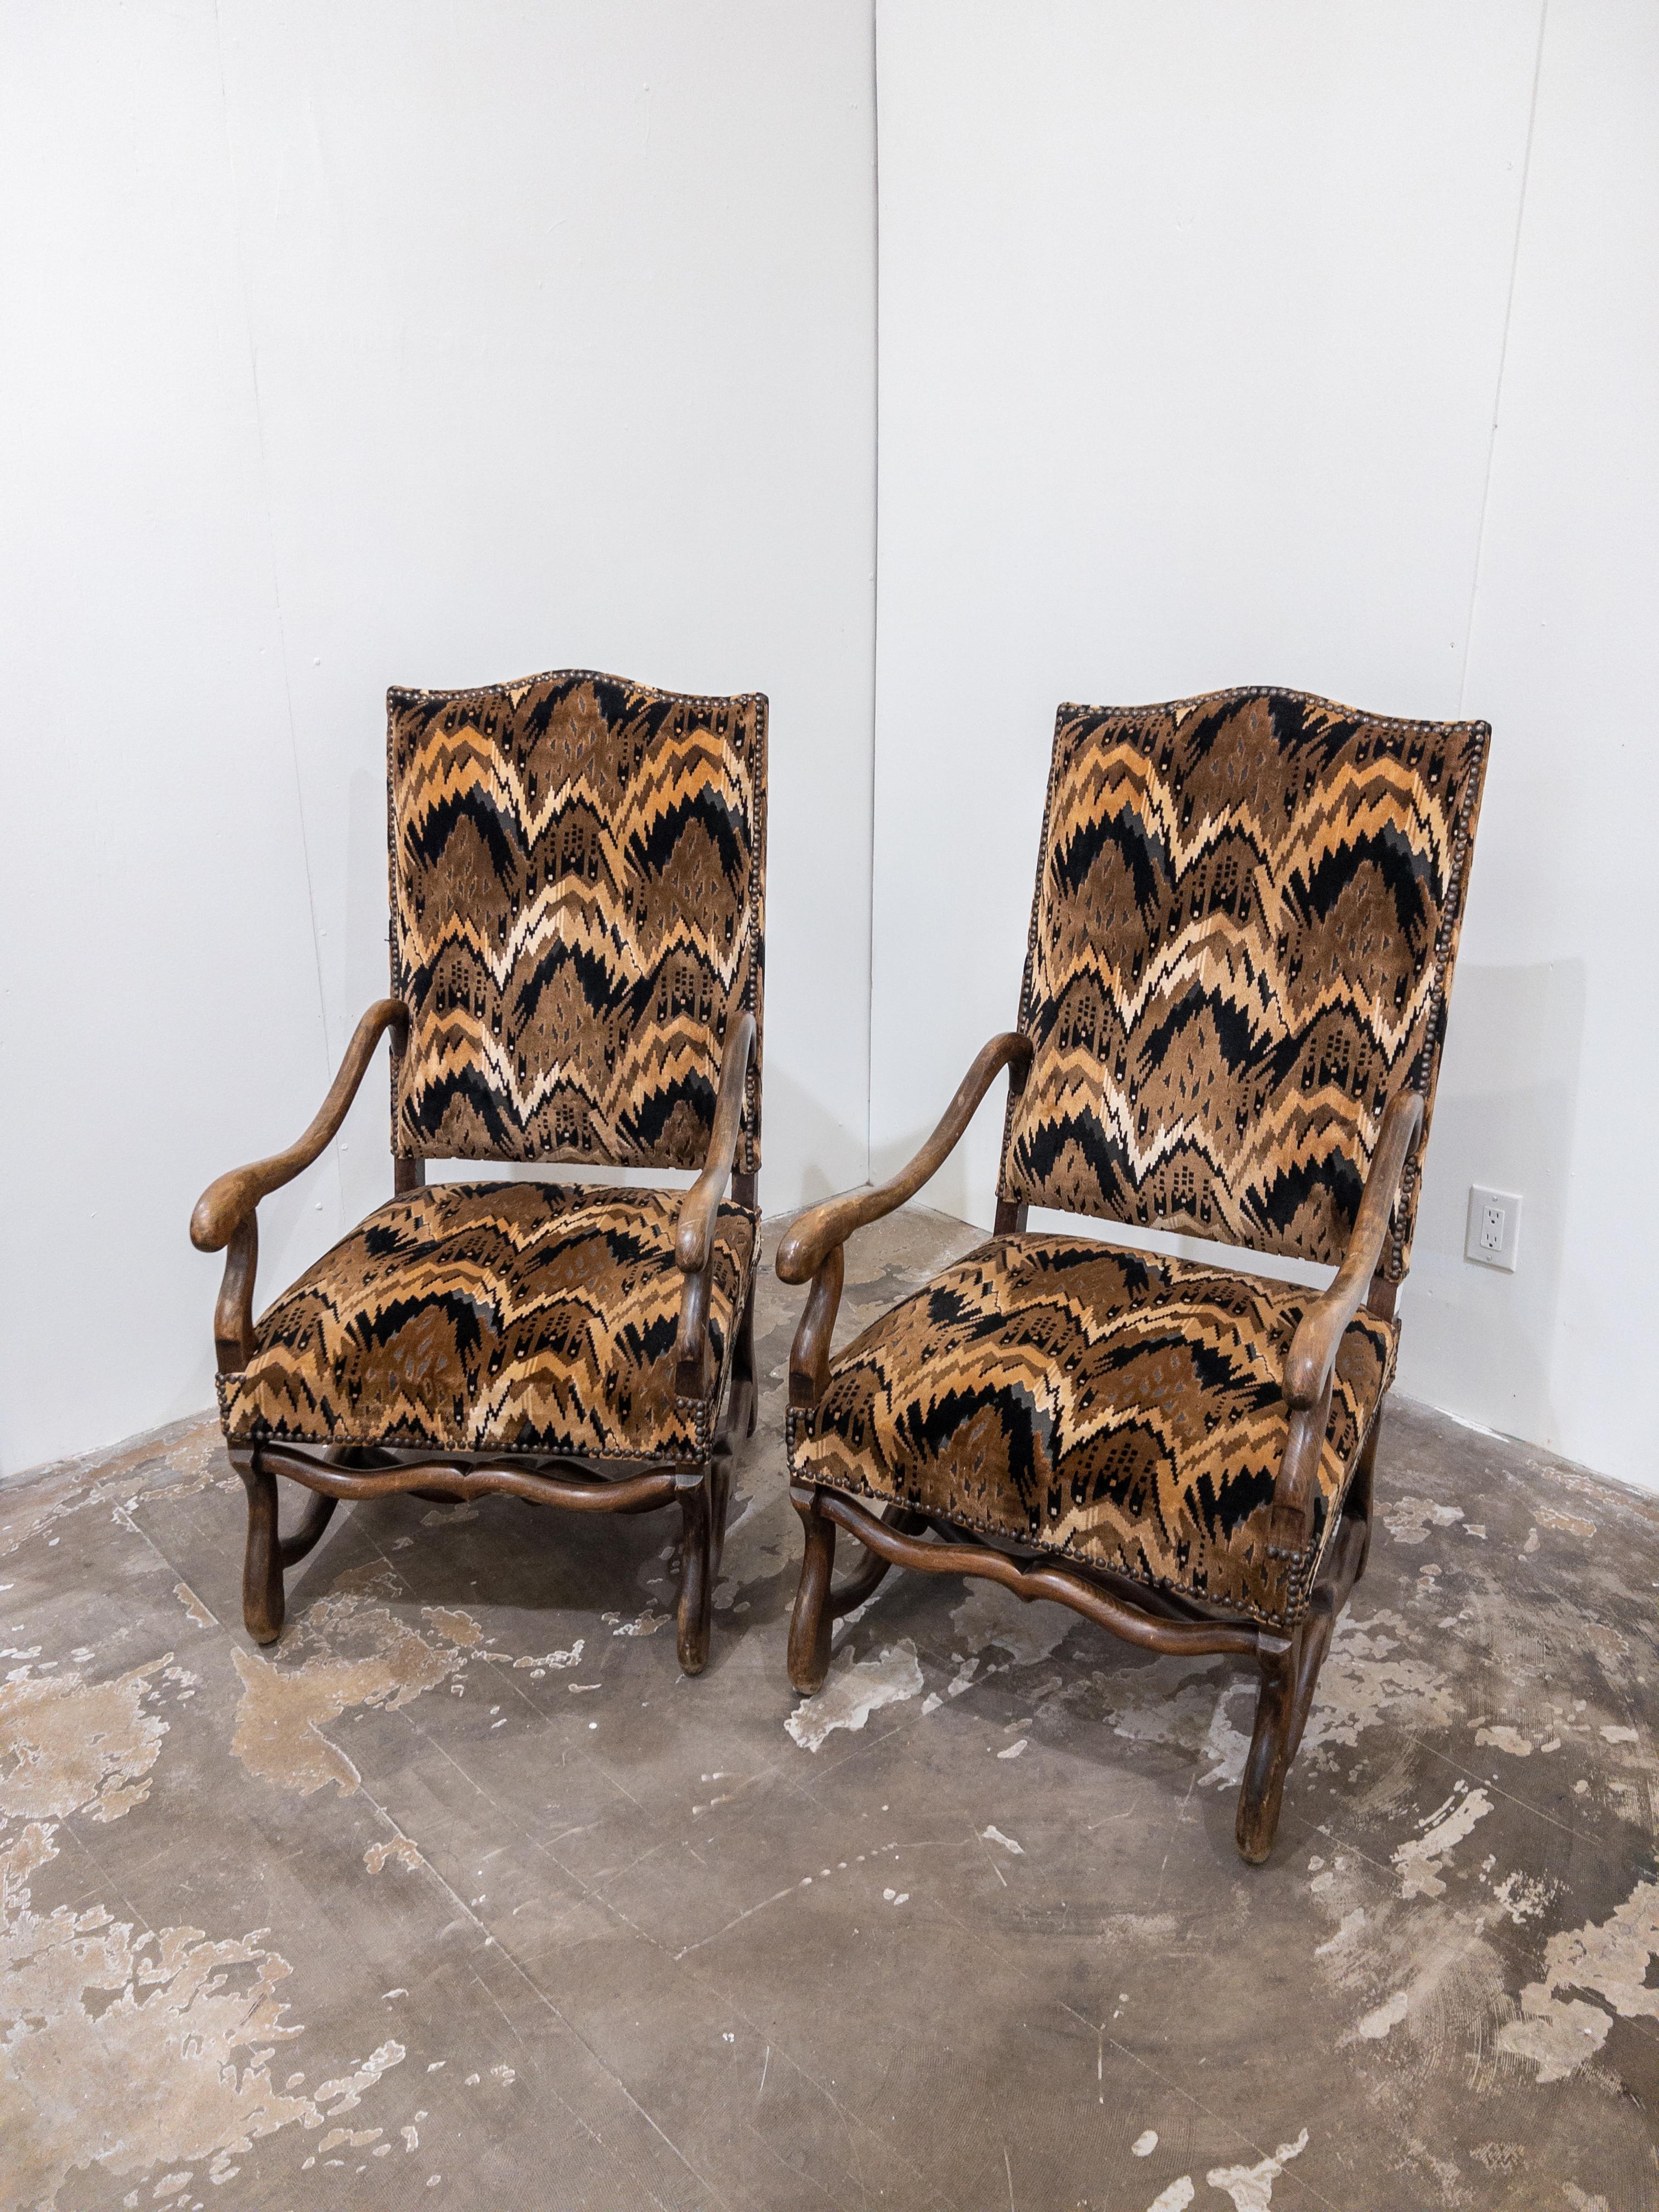 Paire de chaises à accoudoirs Mouton de style Louis XIII de la fin du 19ème siècle.
Exquise et intemporelle, cette paire de fauteuils à accoudoirs en mouton de style Louis XIII de la fin du XIXe siècle incarne la sophistication et l'élégance.